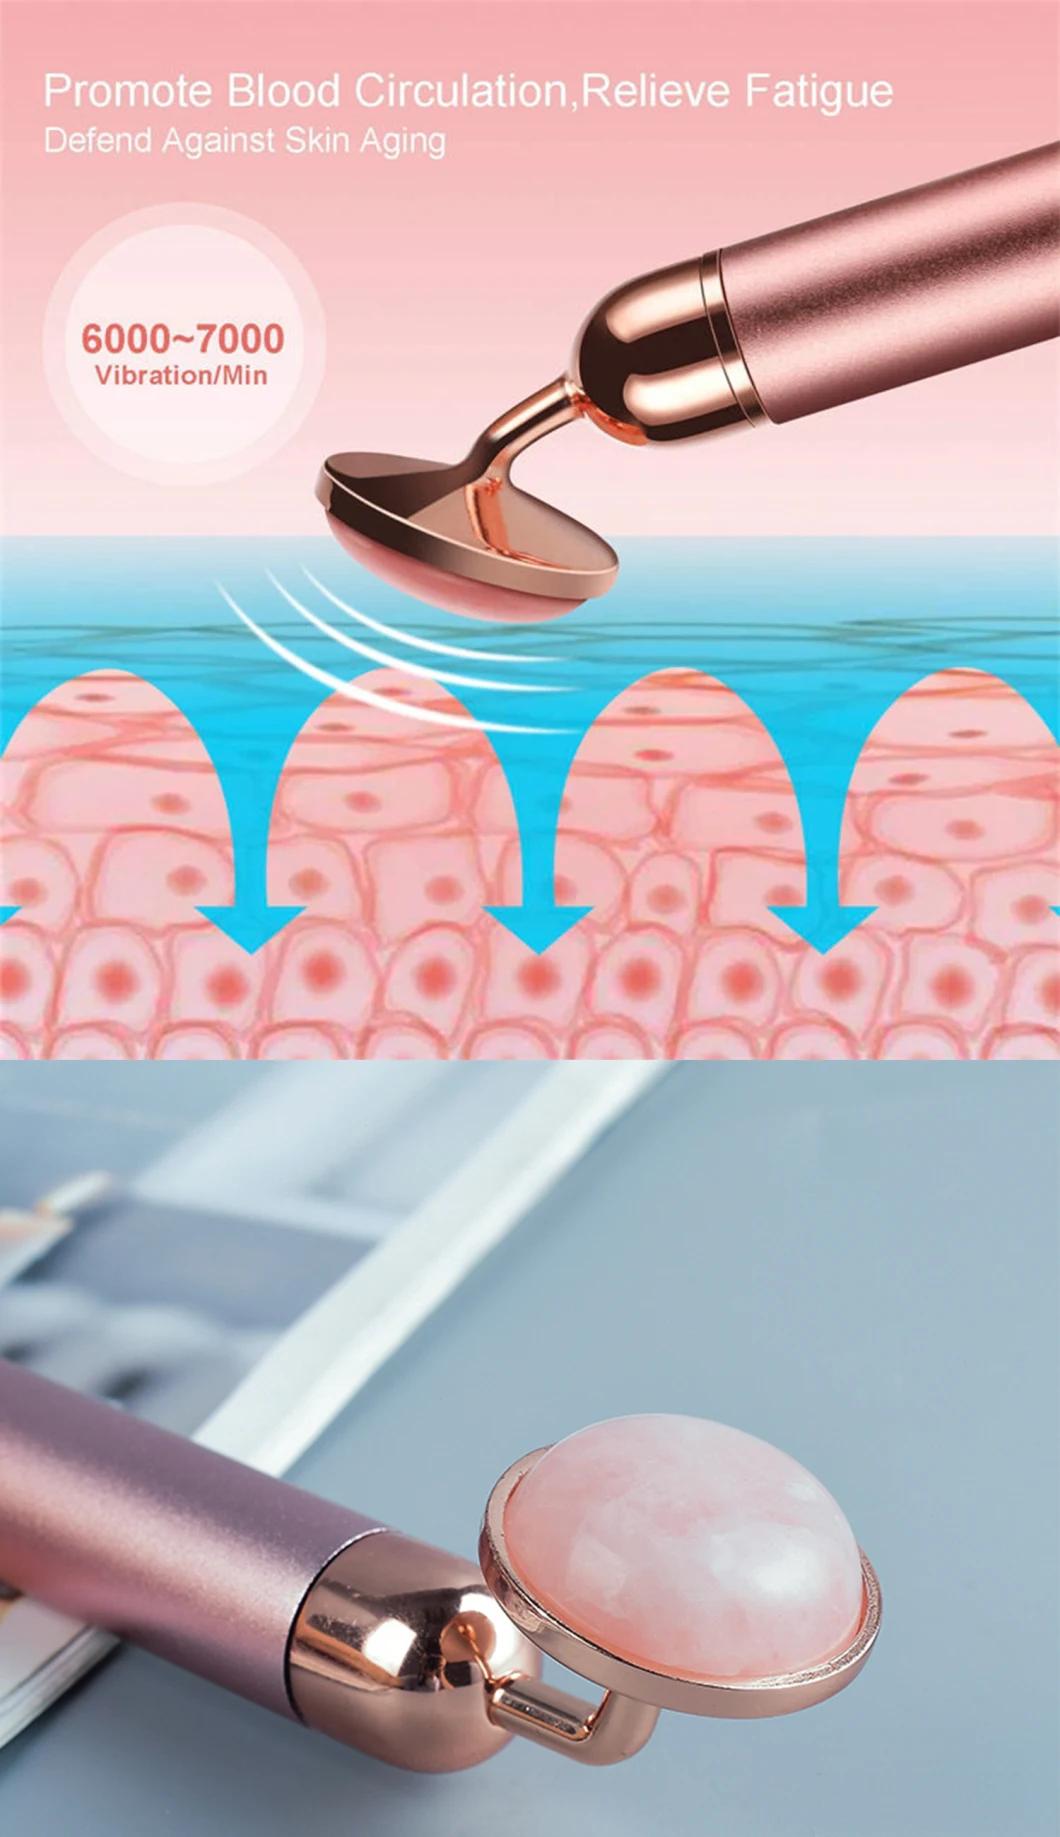 Amazon Hot Electric Vibrating Massager Gua Sha Set 2 in 1 Rose Quartz Tools Vibration Jade Facial Roller